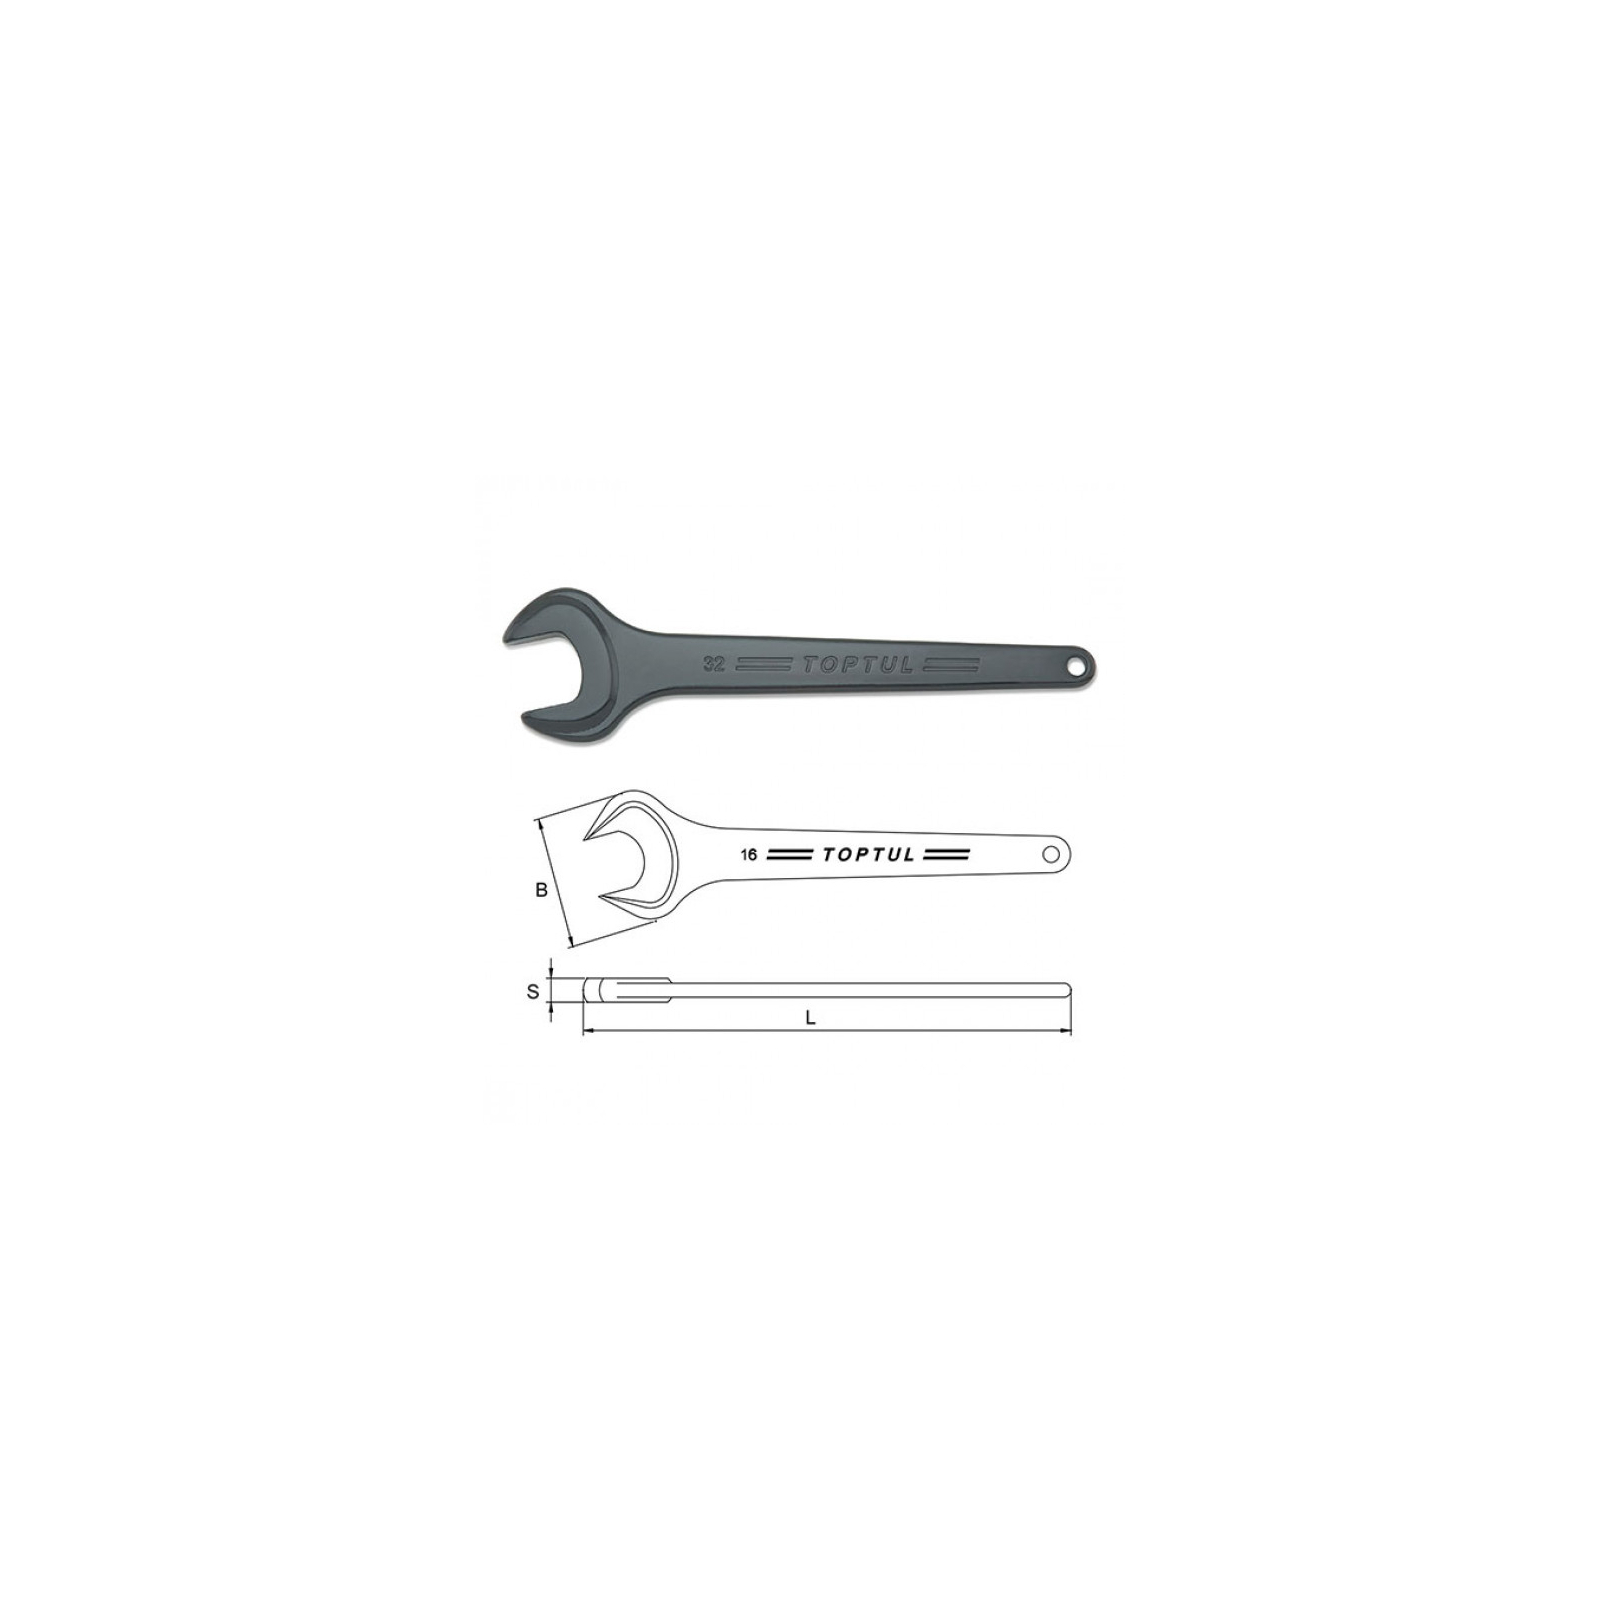 Ключ Toptul рожковый односторонний (усиленный) 19мм (AAAT1919) изображение 2